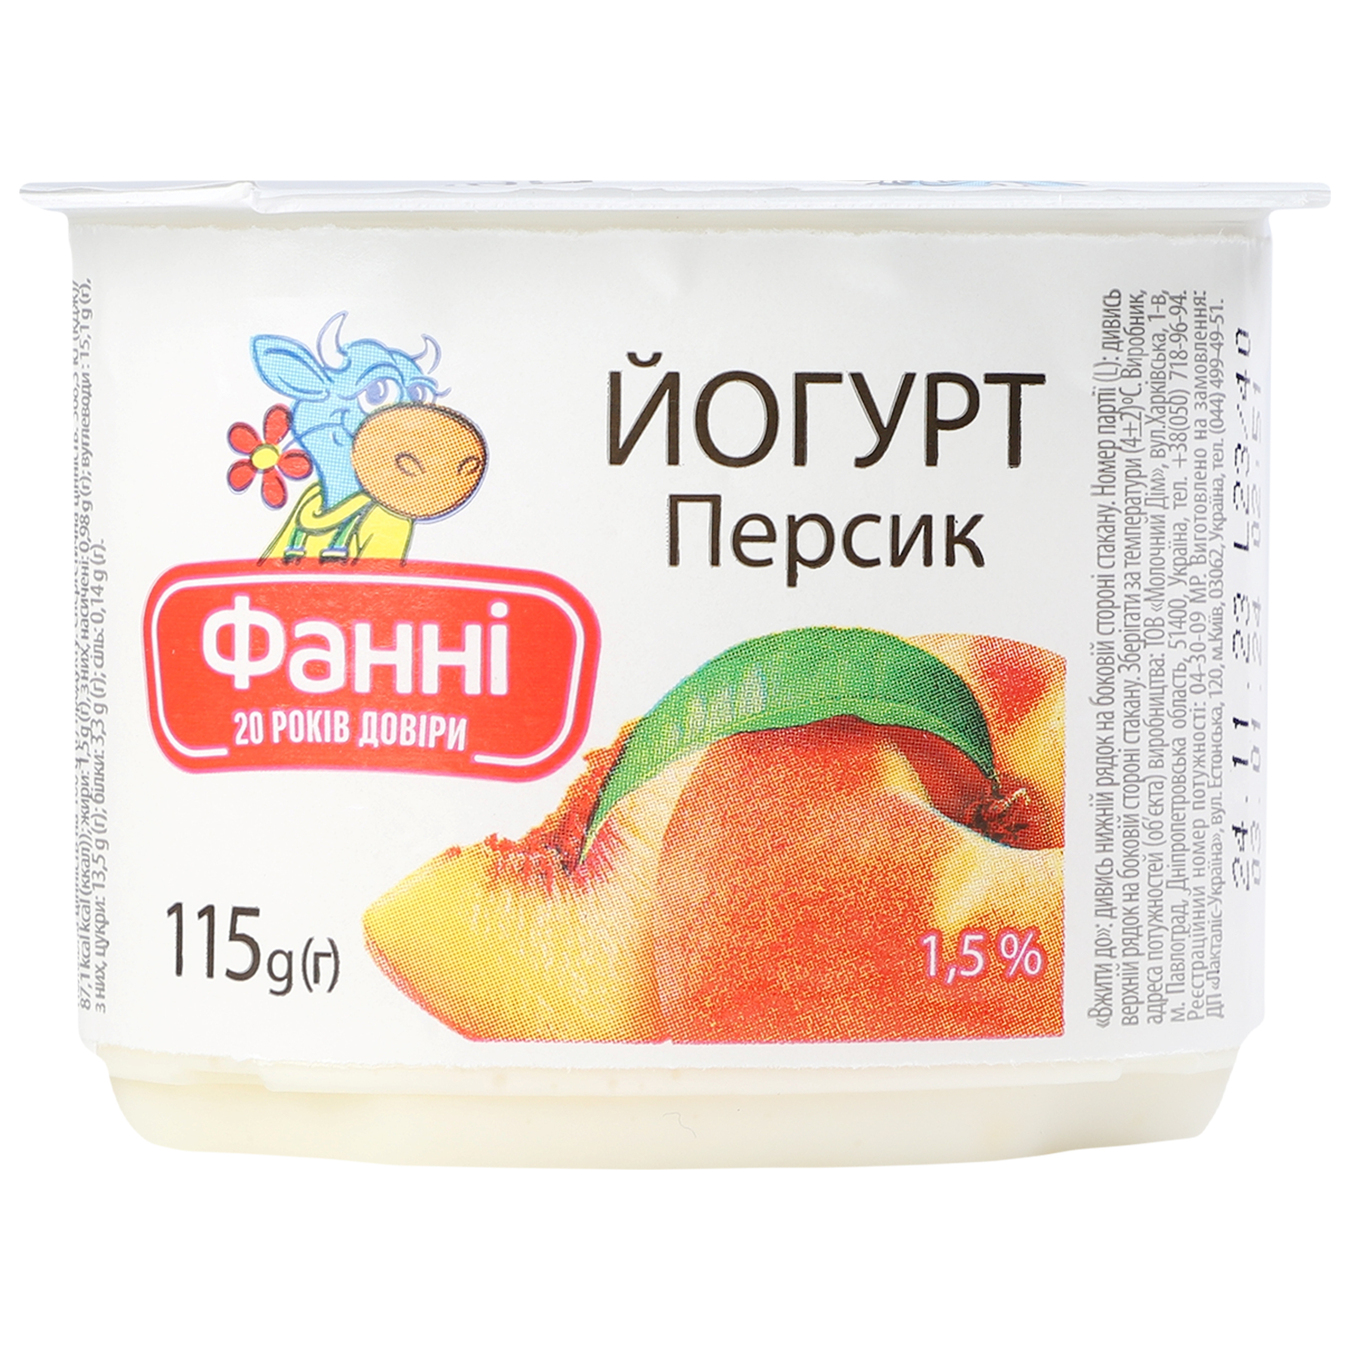 Йогурт Фанни с наполнителем персик стаканчик 1,5% 115г 4